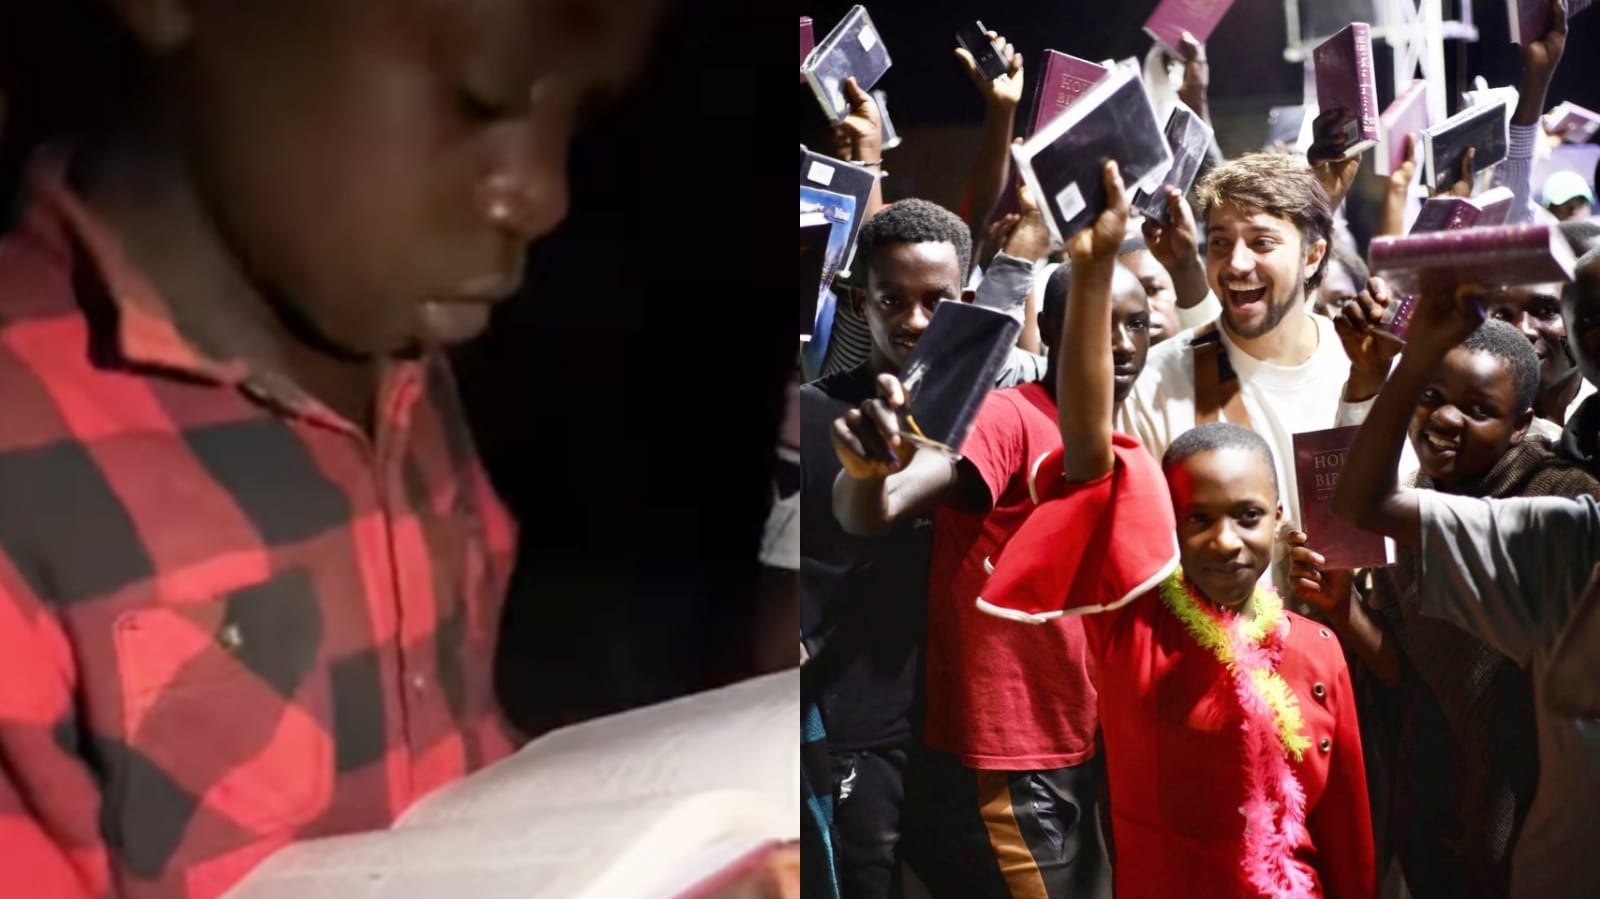 Menino chora ao receber Bíblia de missionário brasileiro em Uganda: “Estão sedentos”